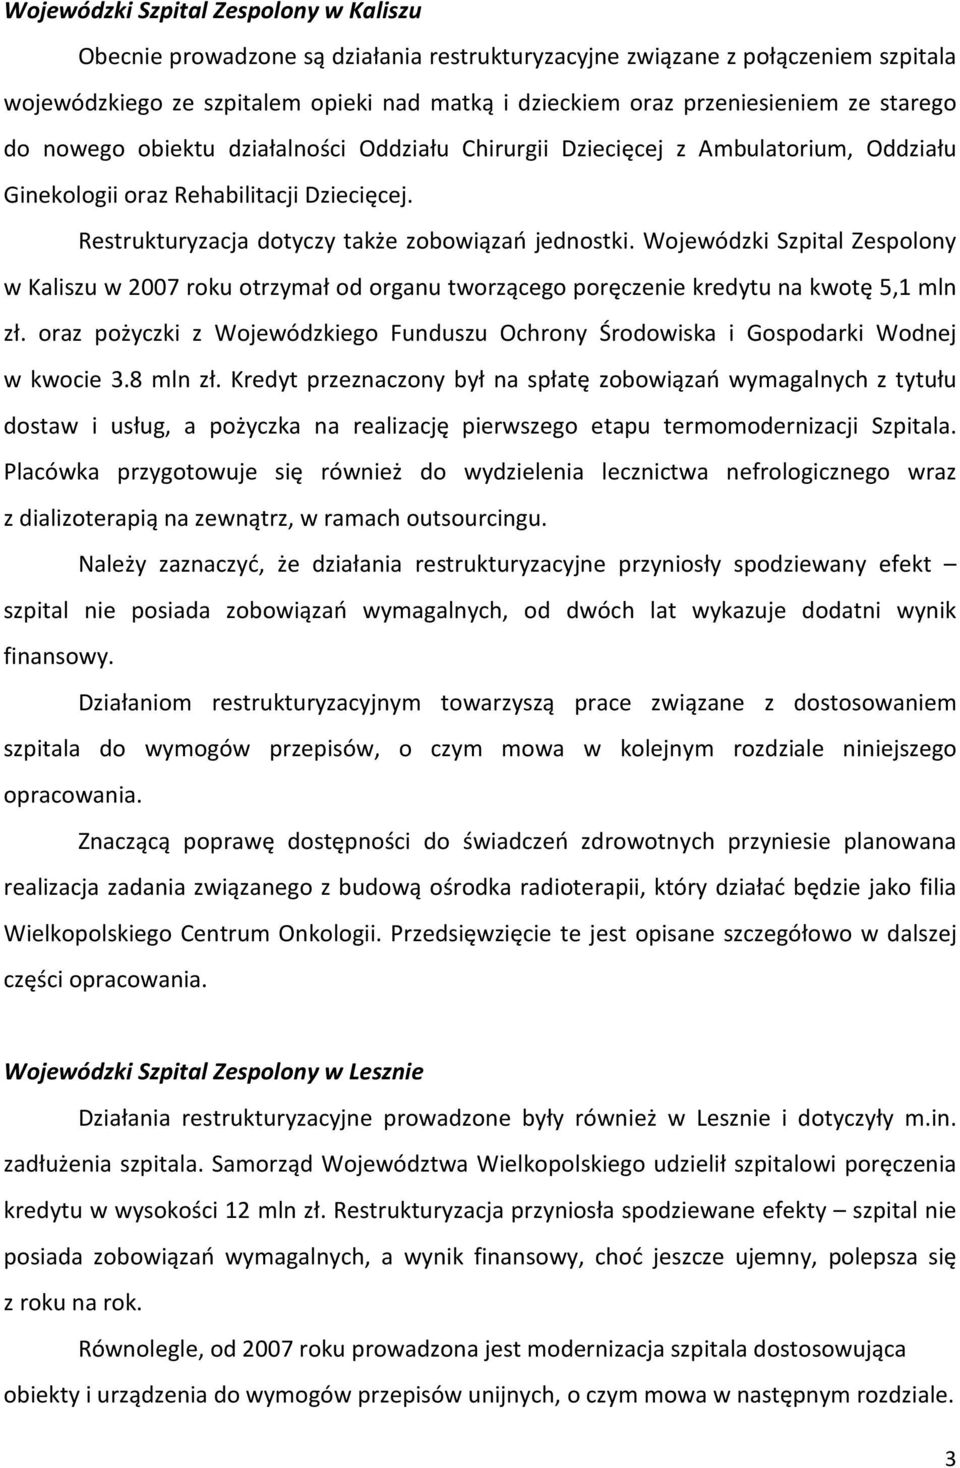 Wojewódzki Szpital Zespolony w Kaliszu w 2007 roku otrzymał od organu tworzącego poręczenie kredytu na kwotę 5,1 mln zł.